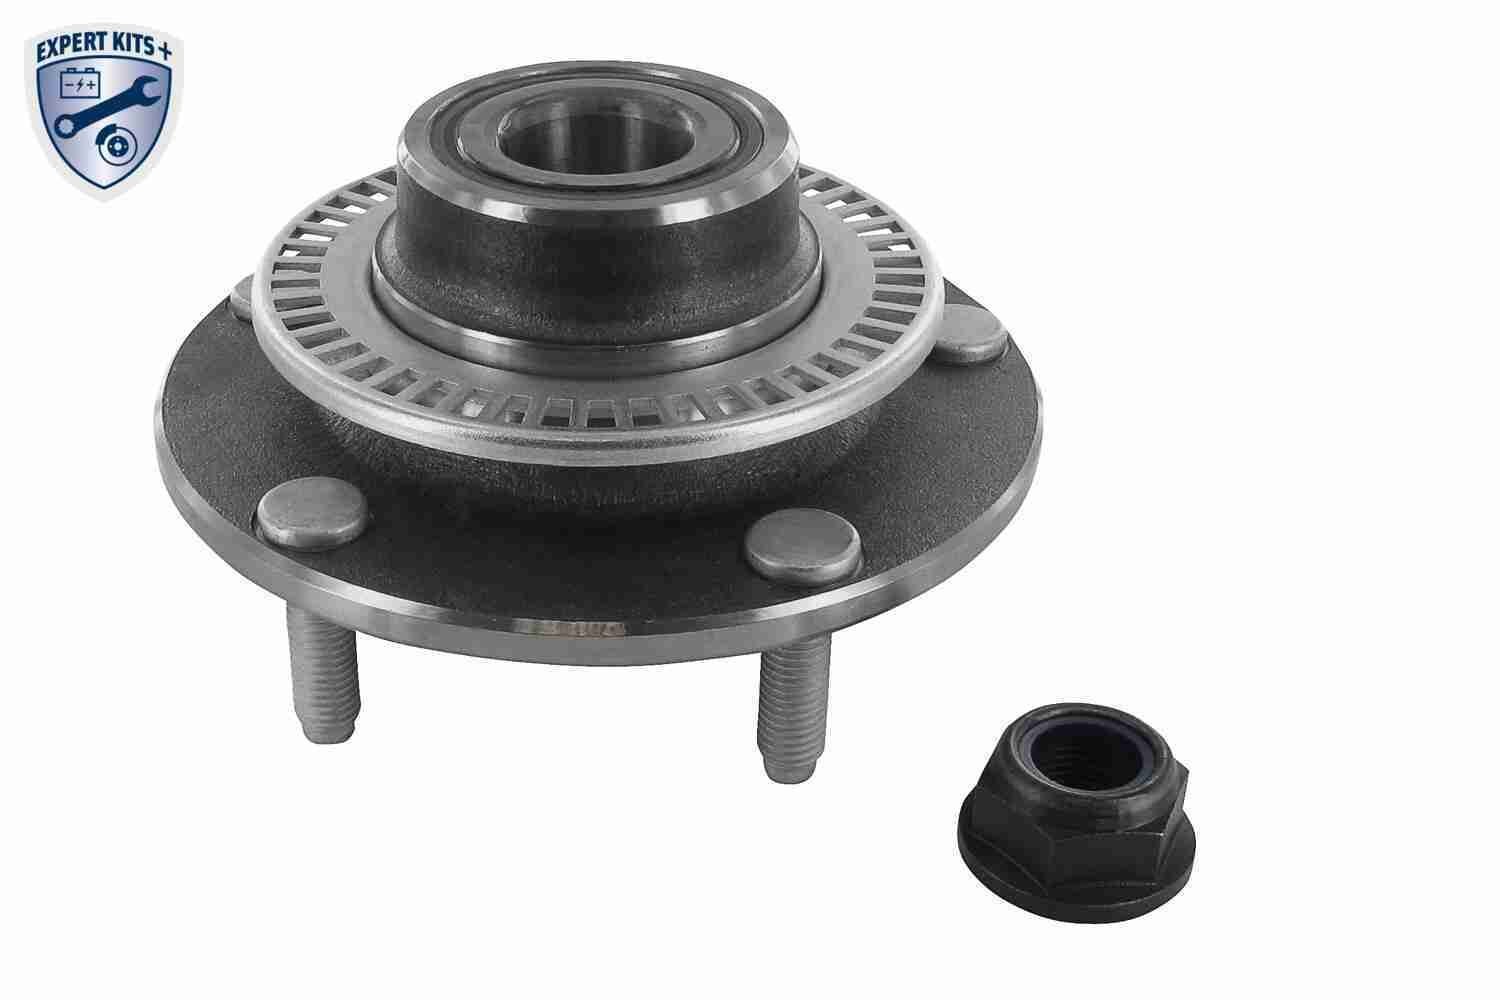 VAICO V25-0467 Wheel bearing kit Rear Axle, EXPERT KITS +, 189 mm